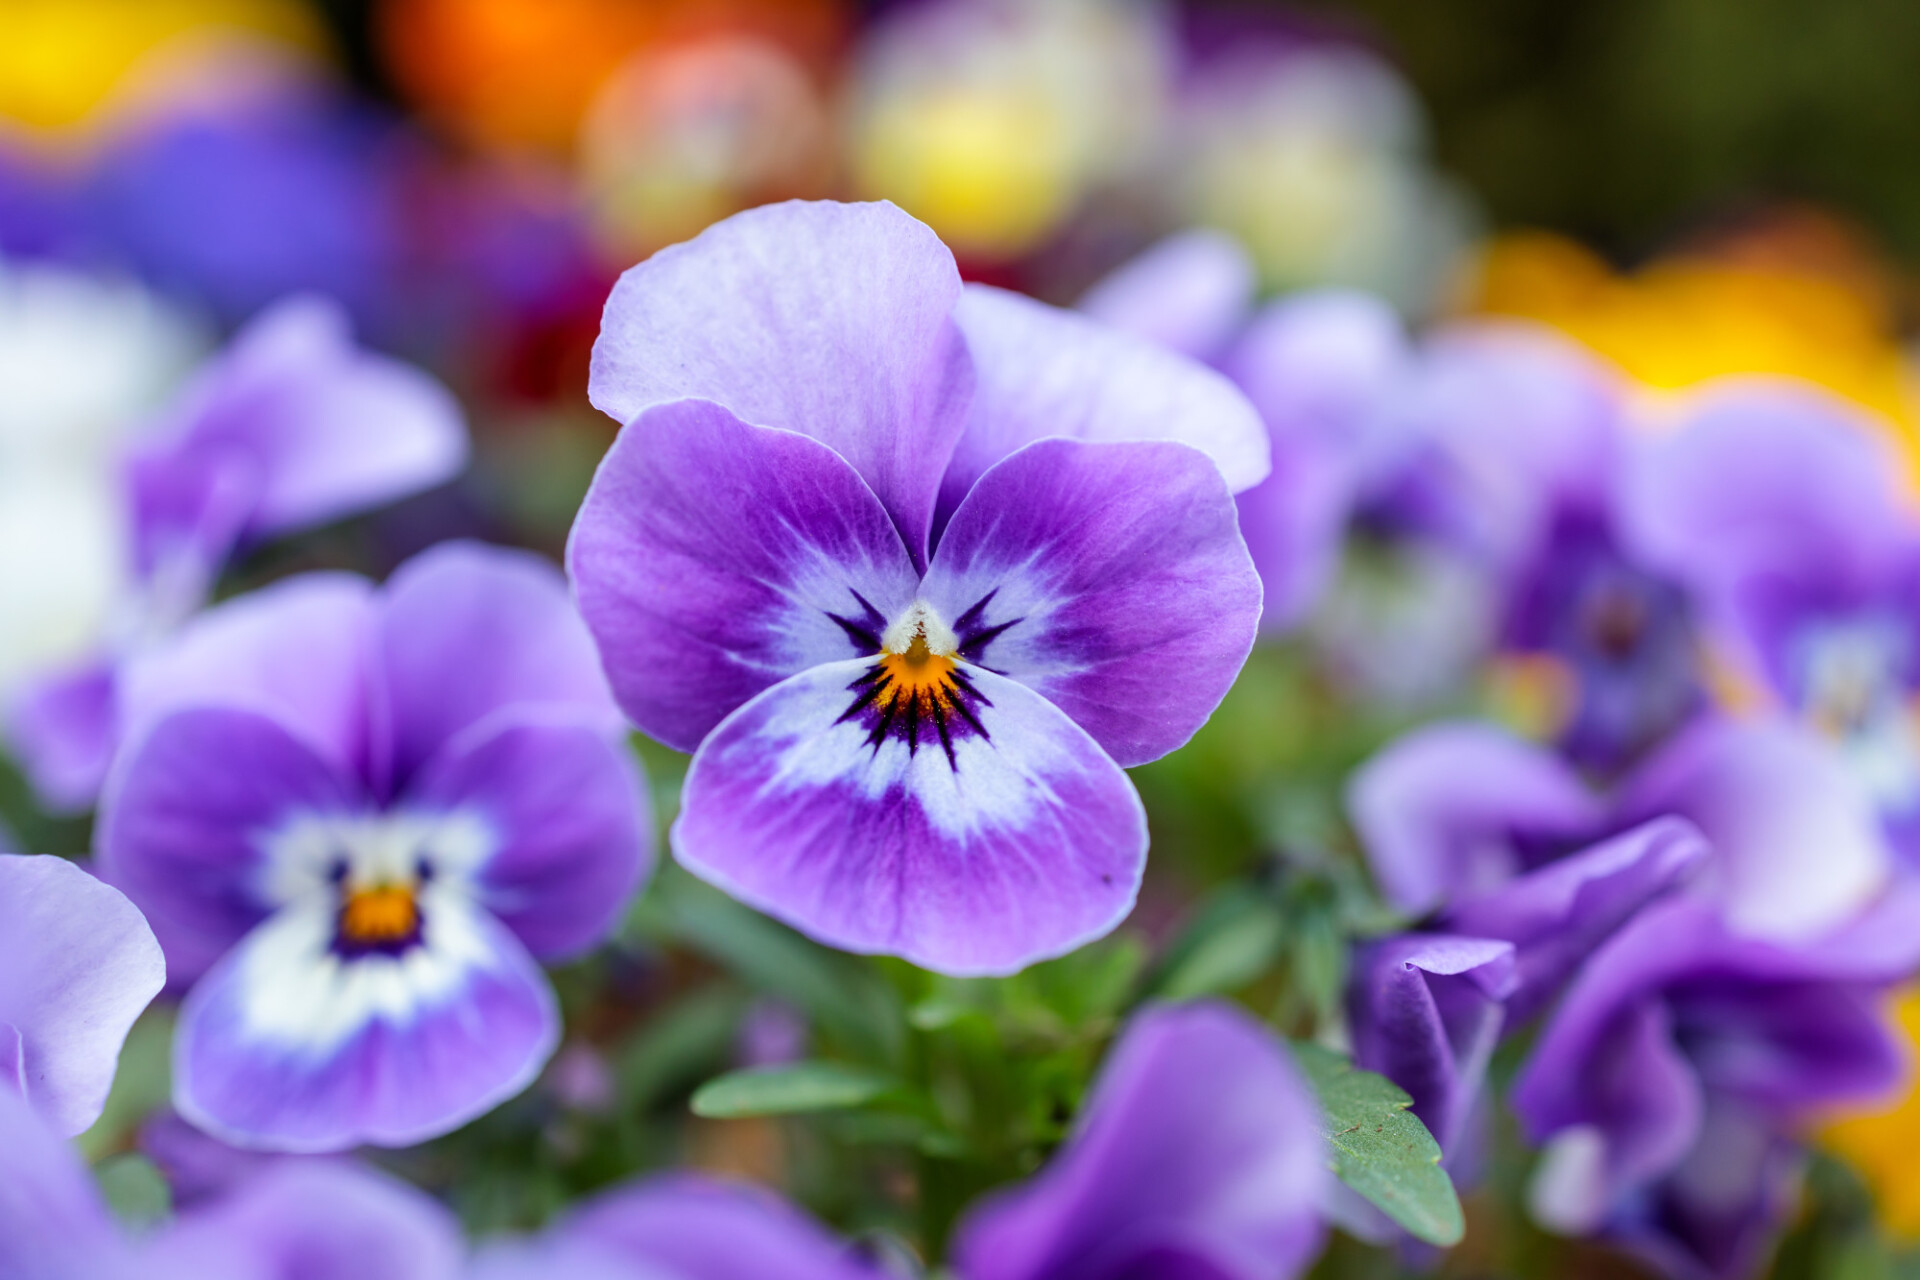 beautiful purple spring flowers - Photo #4094 - motosha | Free Stock Photos